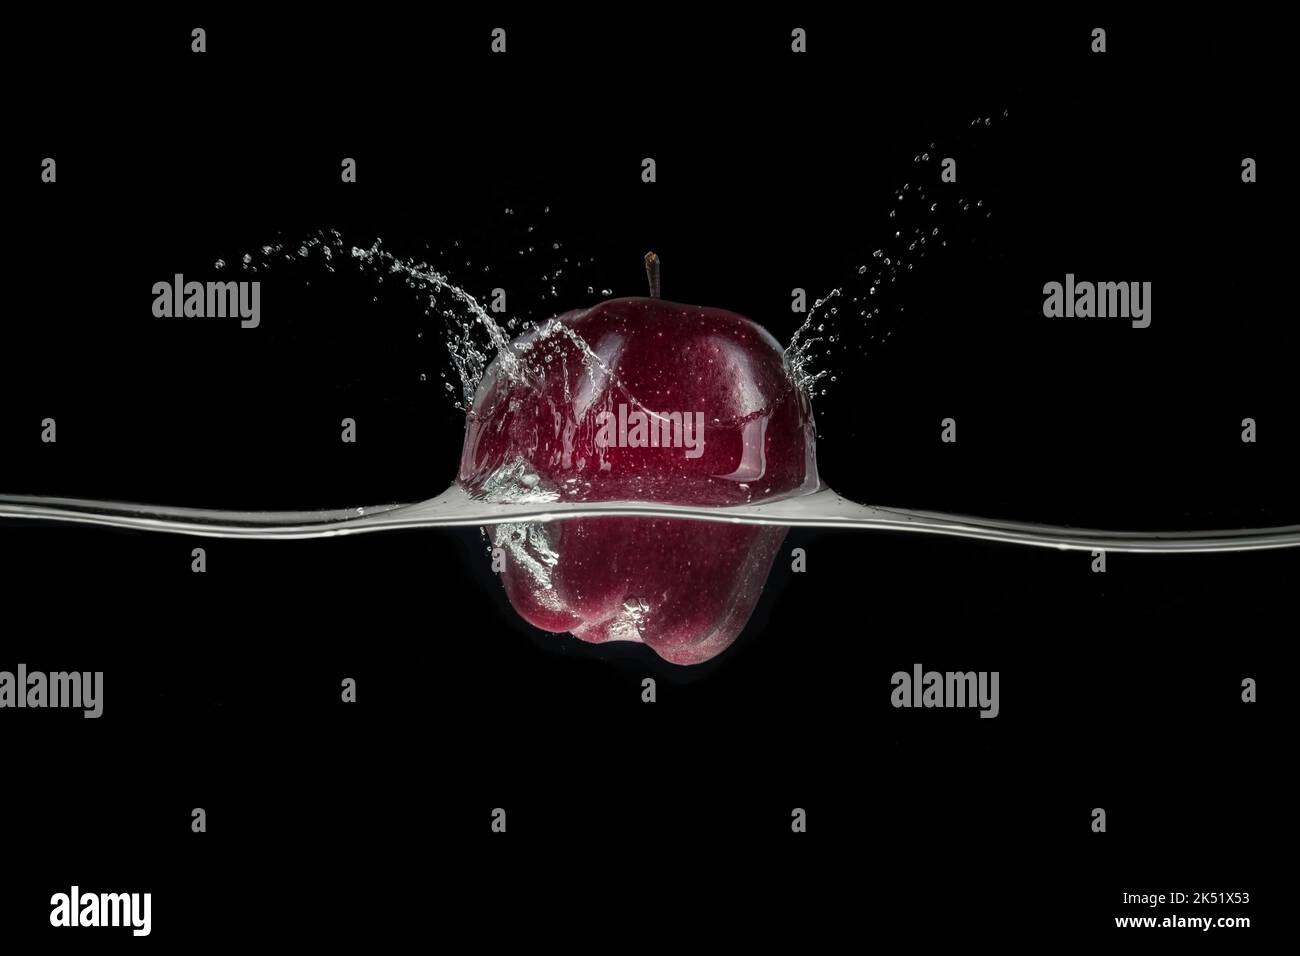 Roter Apfel, der im Wasser spritzt, von einer Seite auf schwarzem Hintergrund betrachtet. Stockfoto